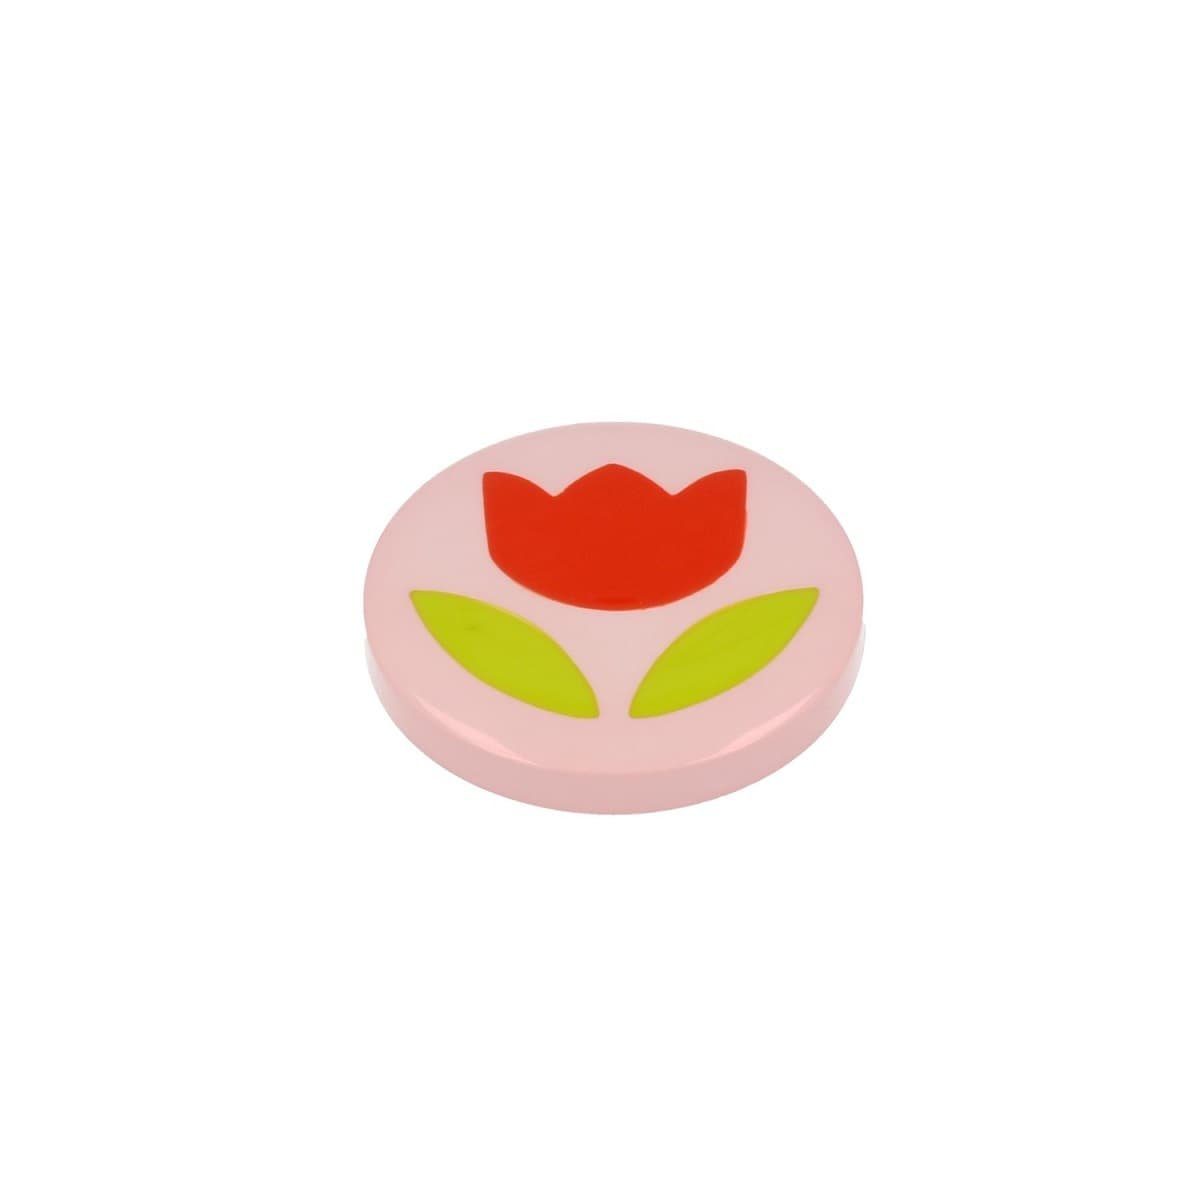 MS Beschläge Türbeschlag Möbelknopf Kinderzimmerknopf Pink mit Blume | Beschläge